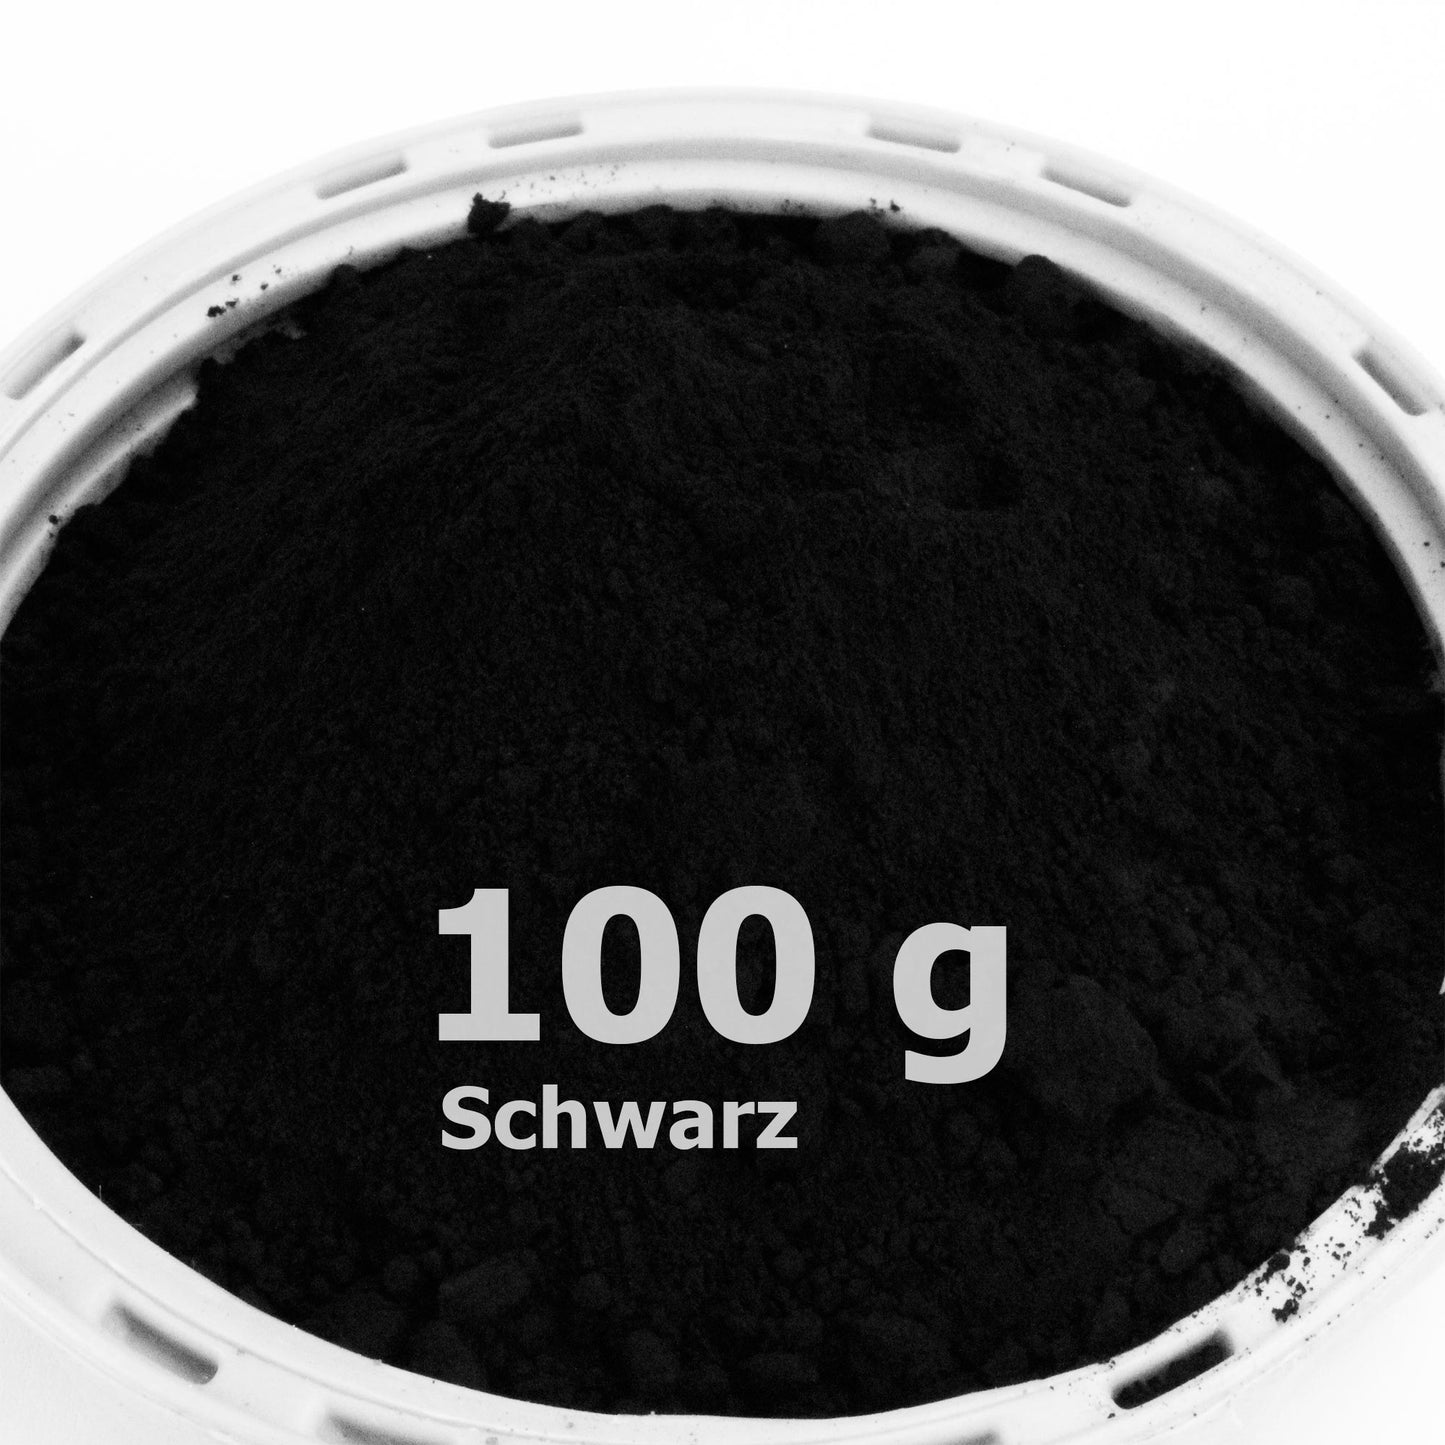 Schwarzpulver für Beton / Zement / Gips - 100g Probepackung